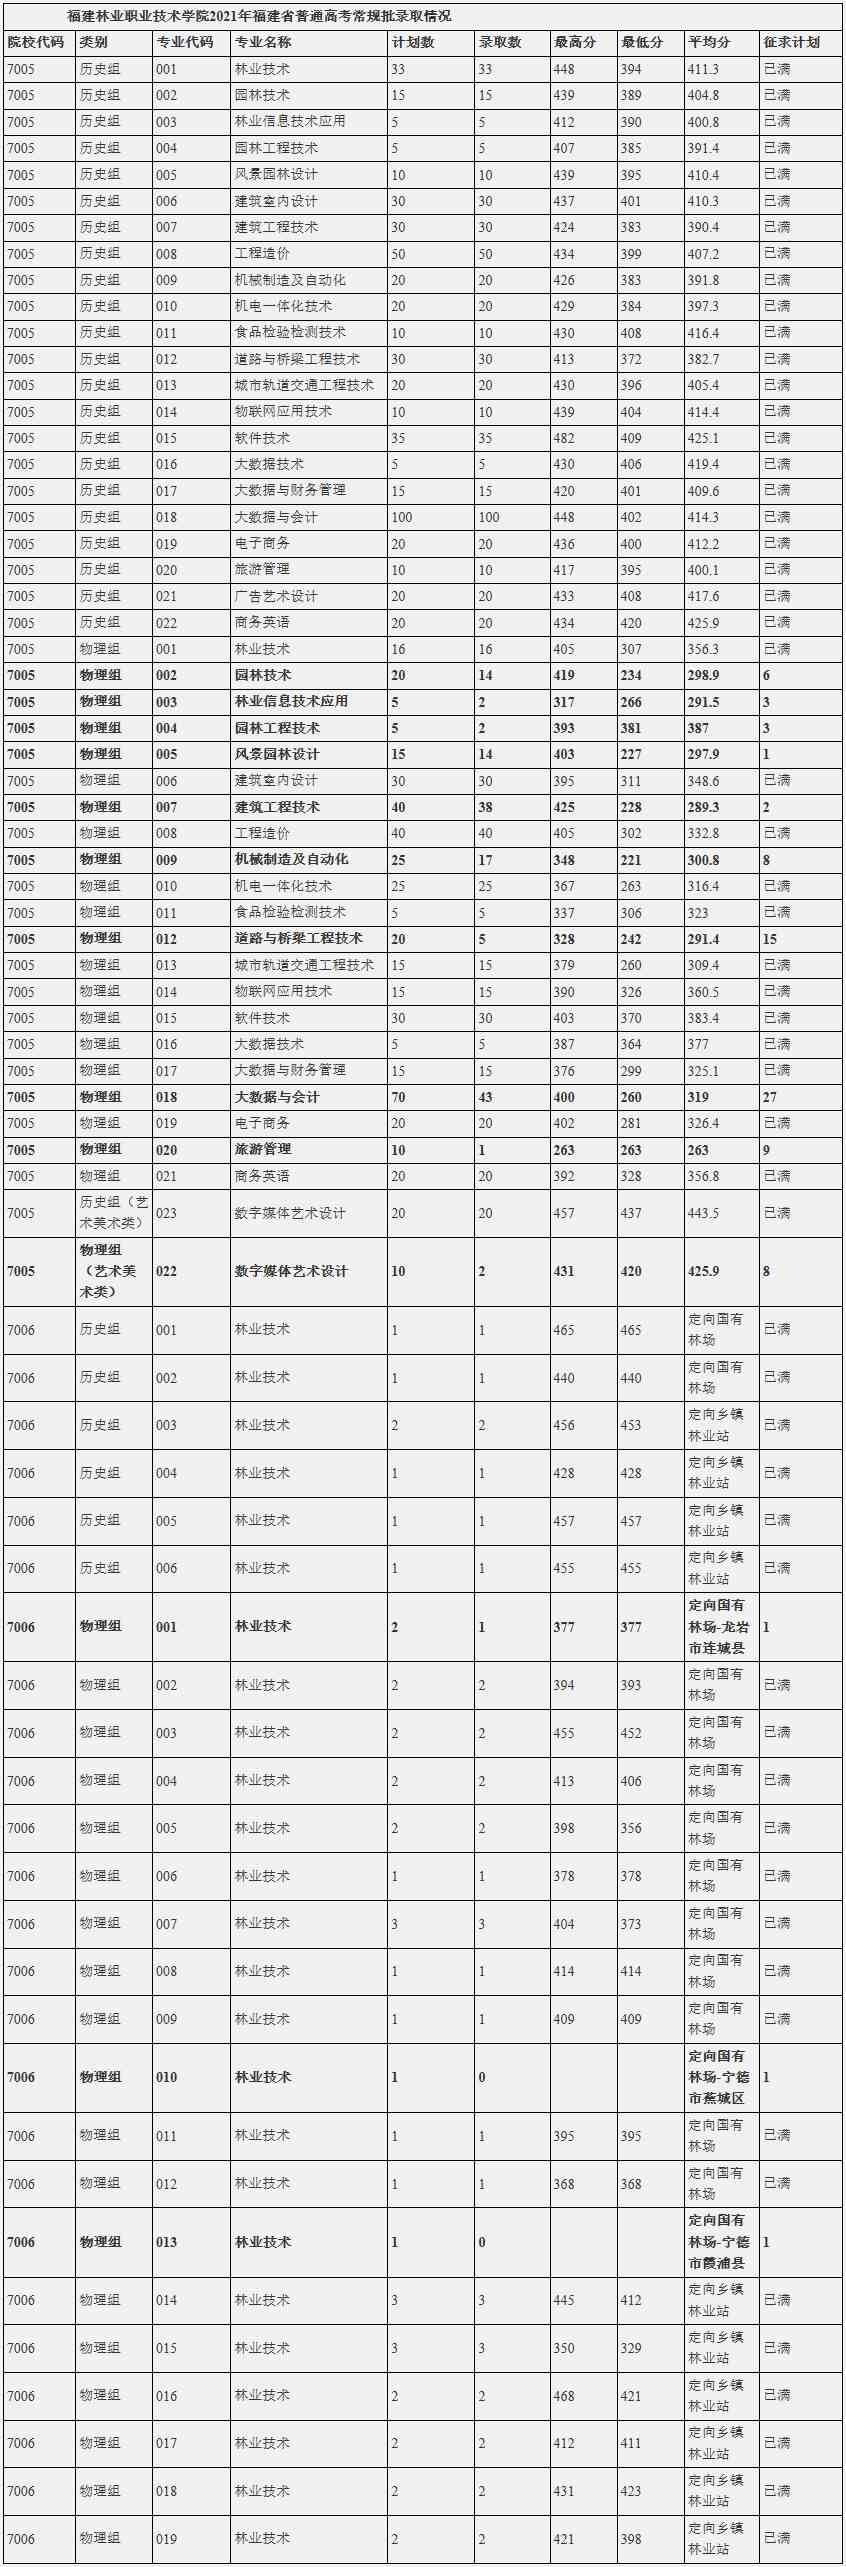 福建林业职业技术学院2021年福建省普通高考常规批录取情况.jpg